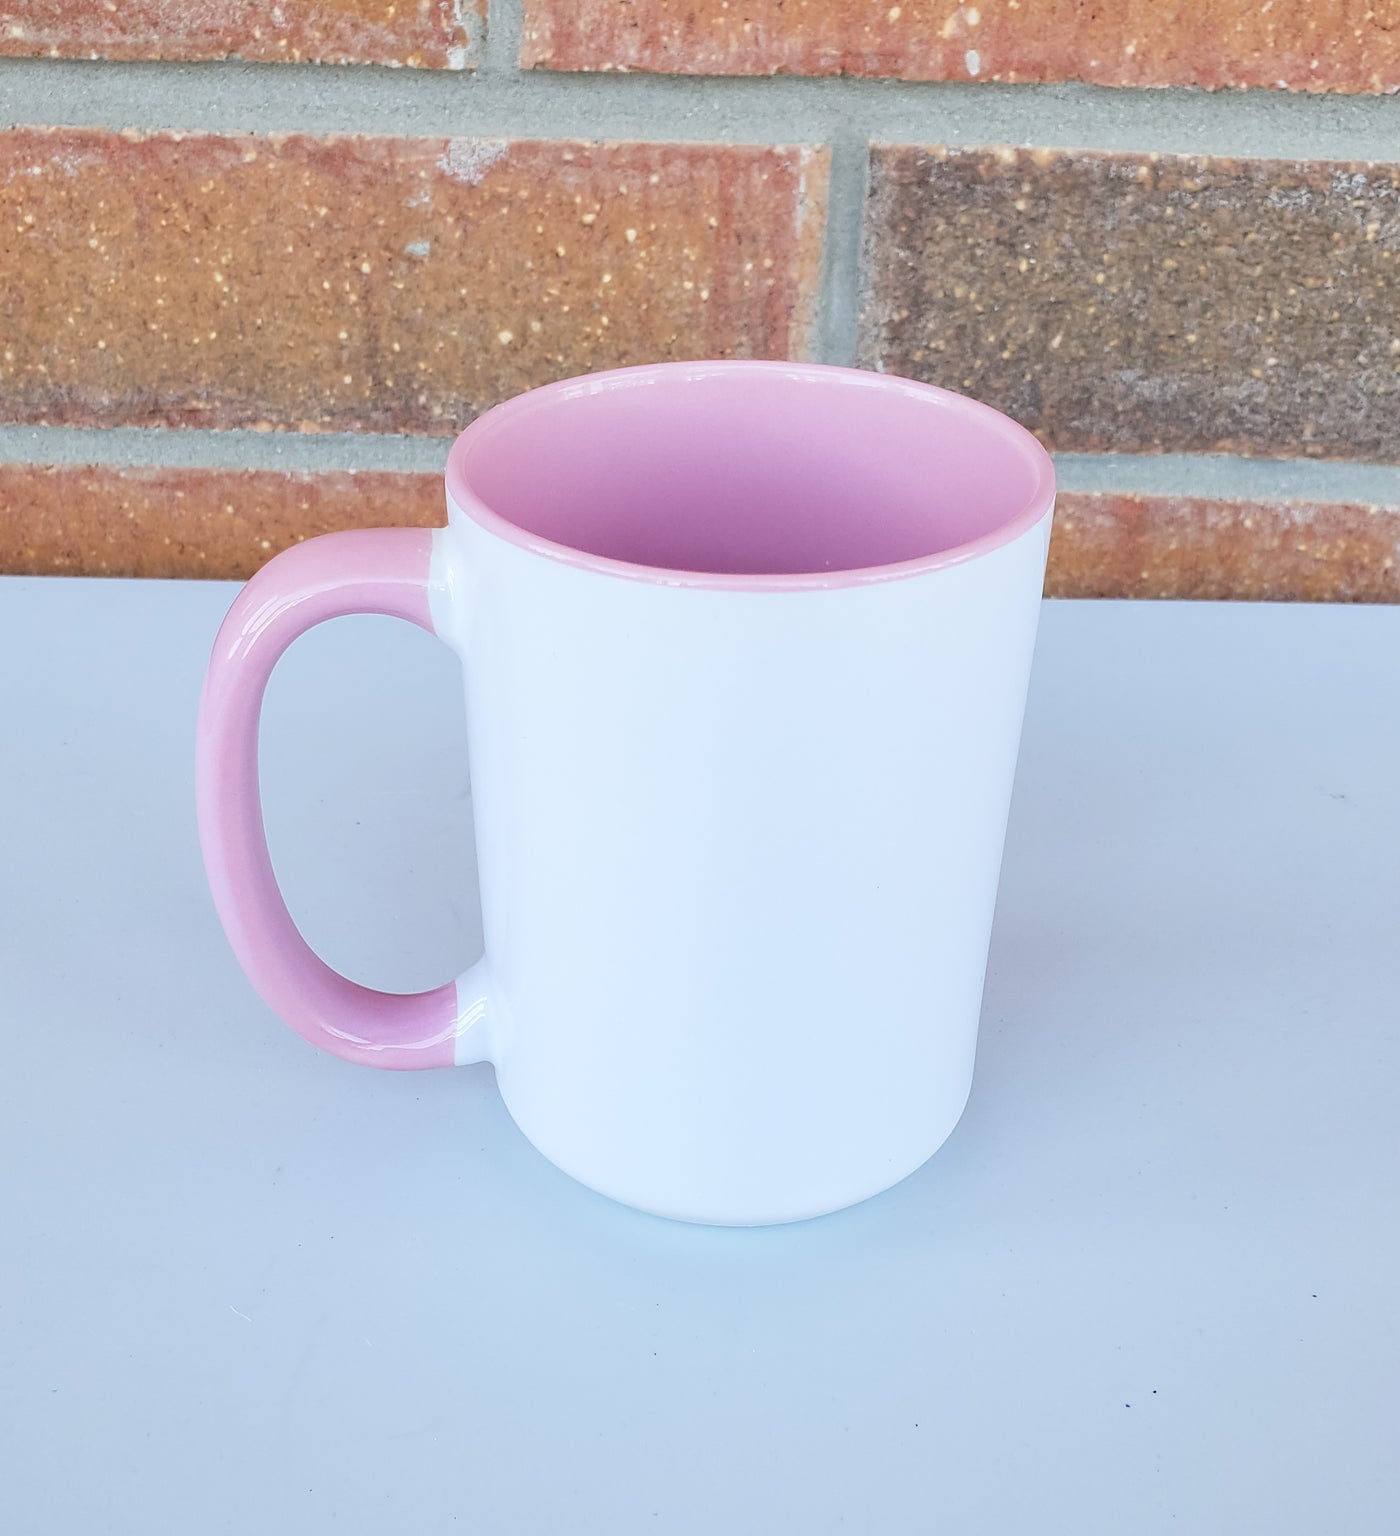 Cup of Fuckoffee Mug